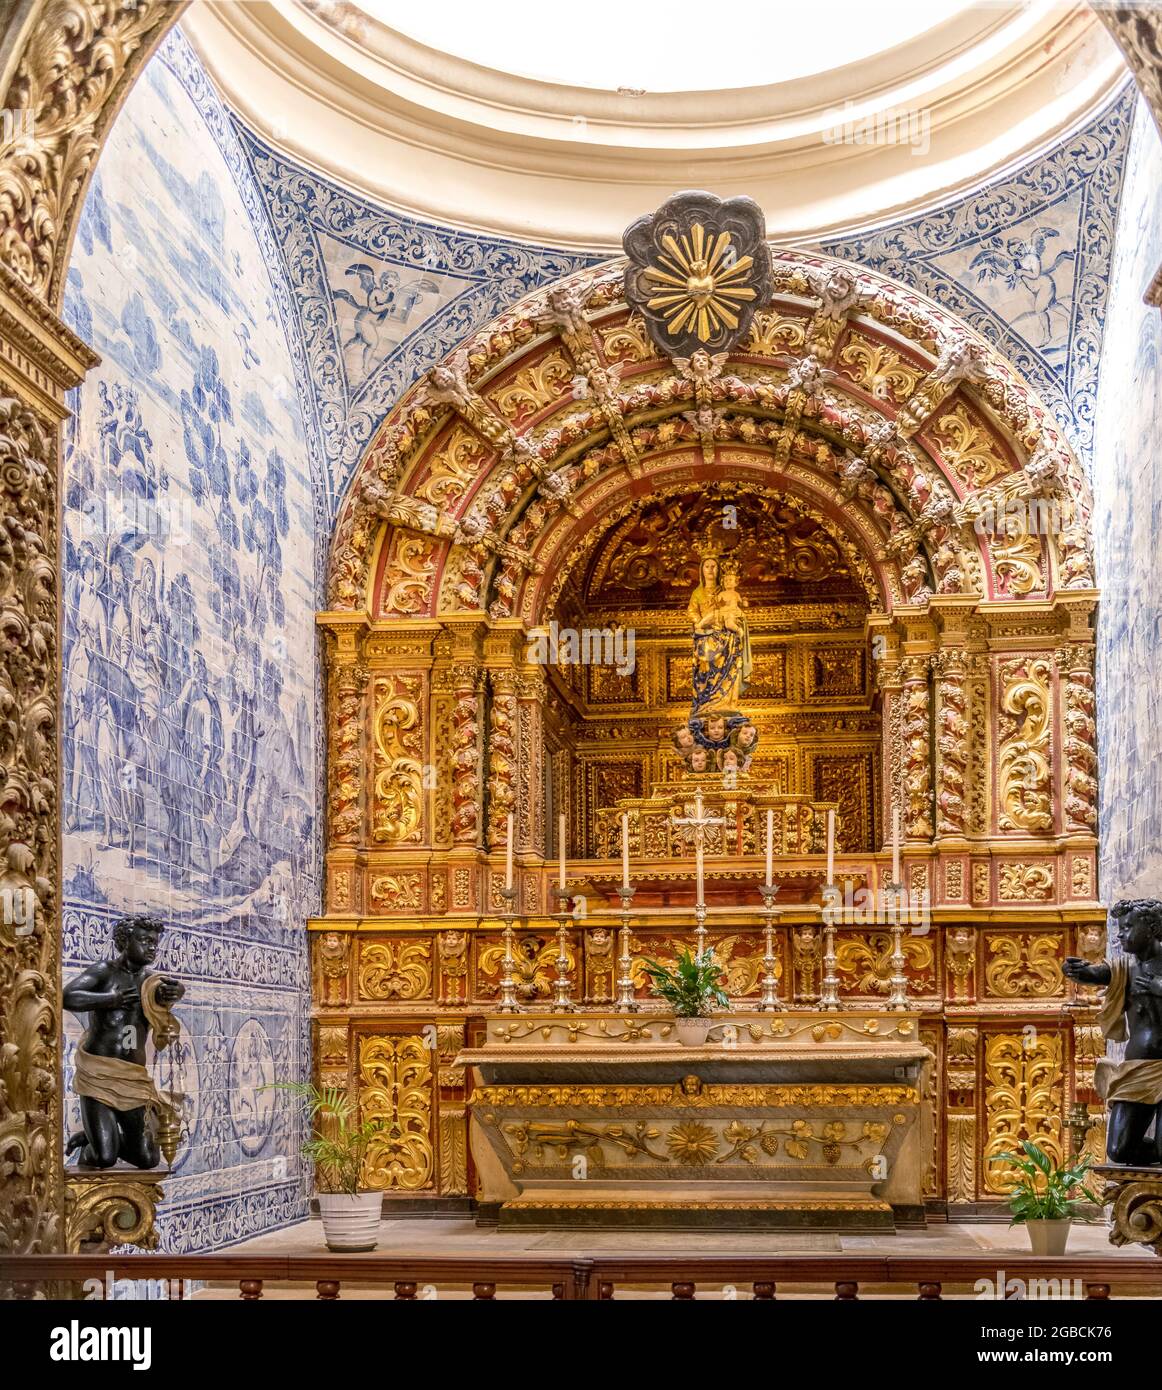 Ornato alter / santuario raffigurante Maria e Gesù bambino, interno della cattedrale di Faro, se cattedrale di Faro, Algarve Portogallo Foto Stock